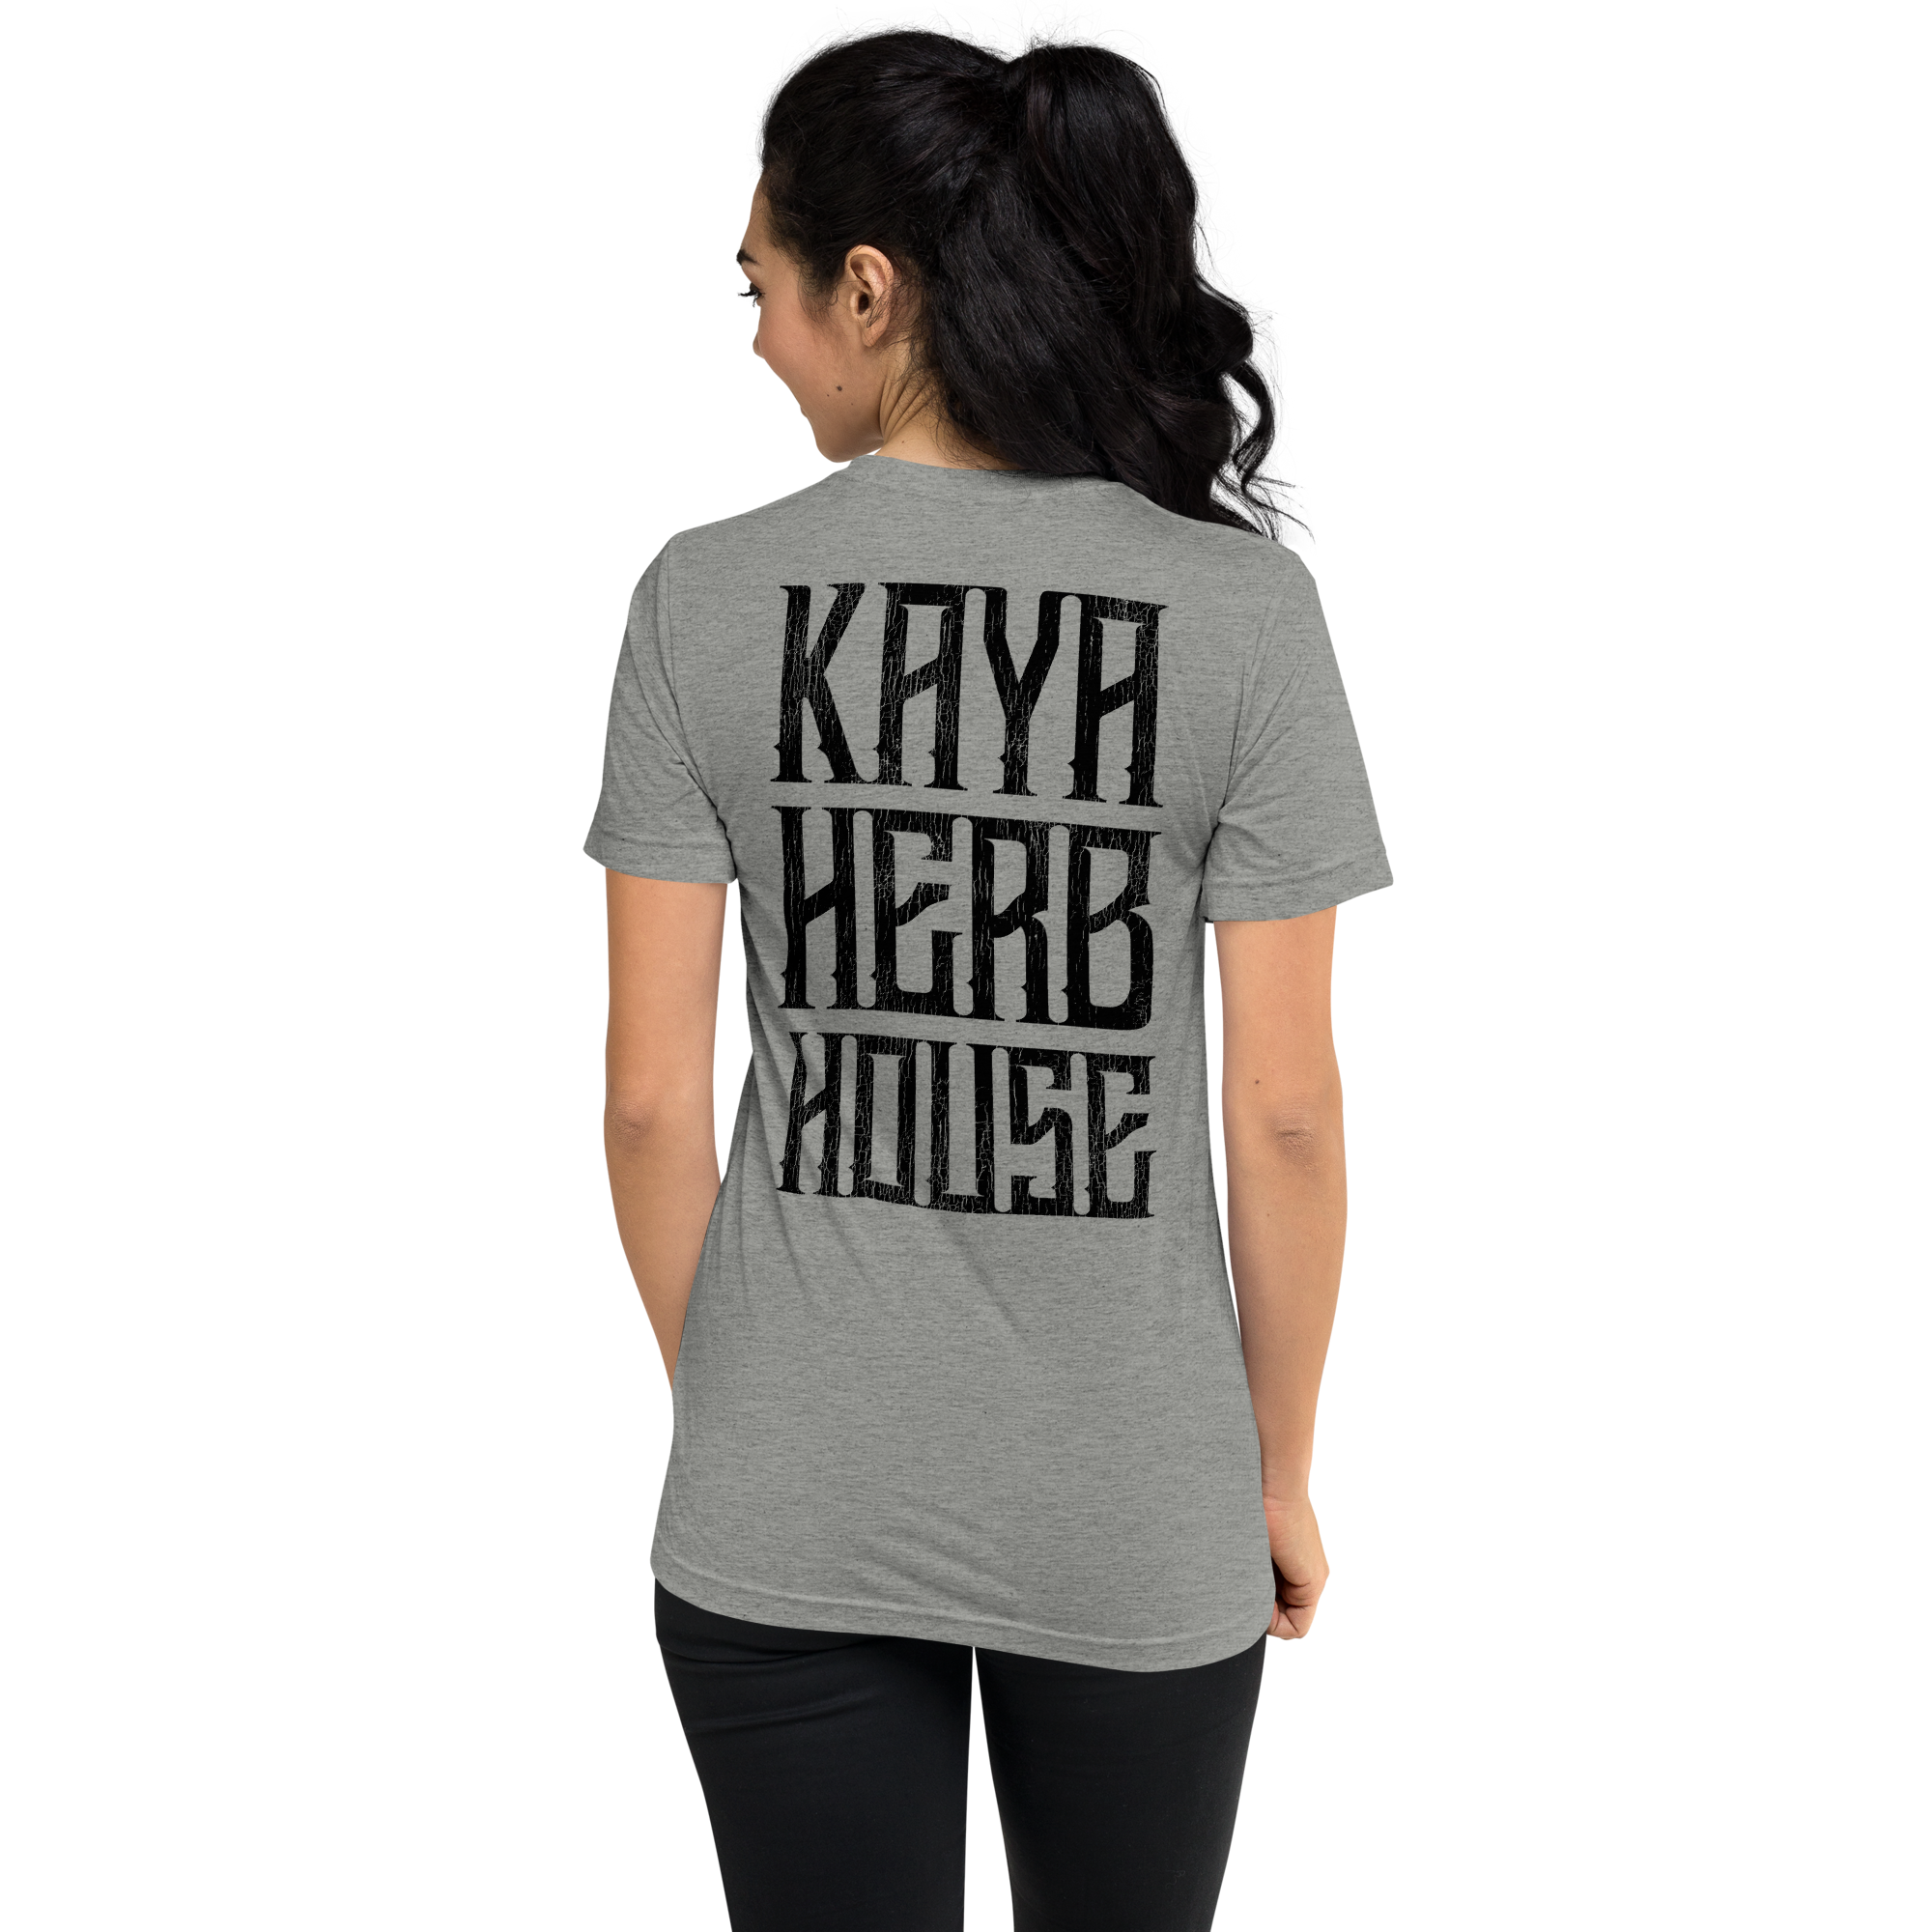 Unisex Kaya Herb House on Back Short Sleeve T-Shirt